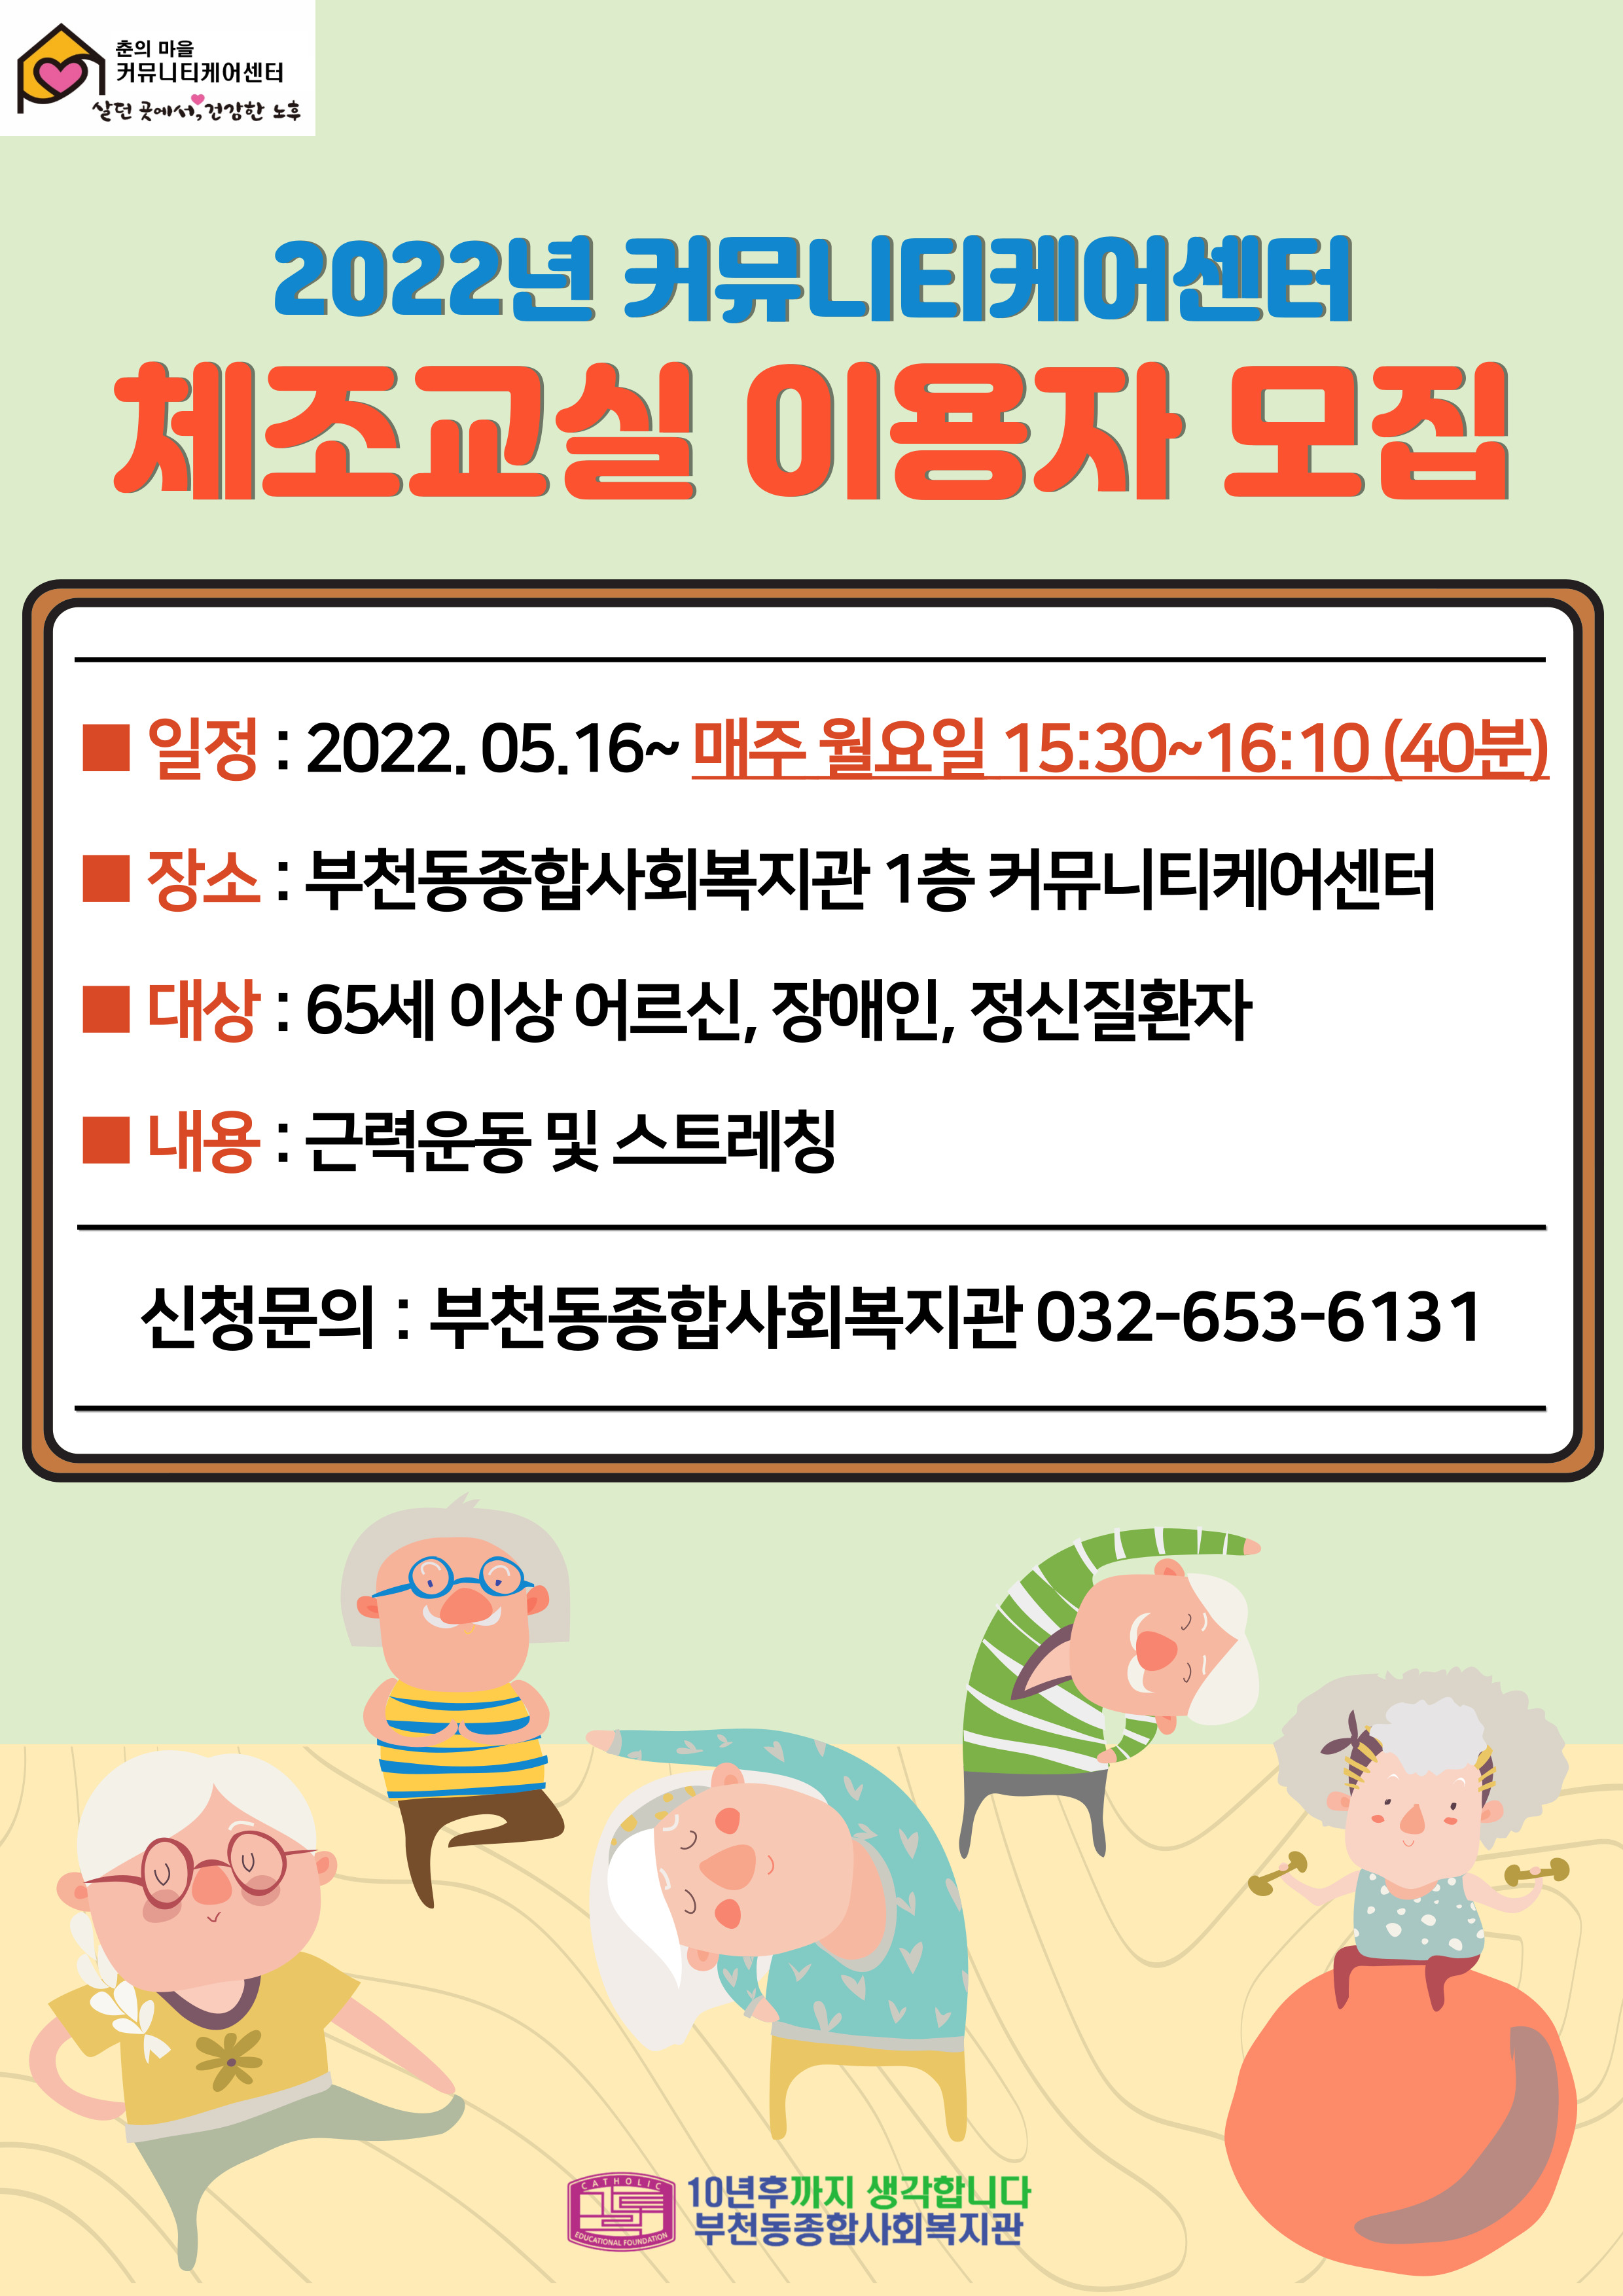 [춘의마을 커뮤니티케어센터] 2022년 커뮤니티케어센터 체조교실 이용자 모집